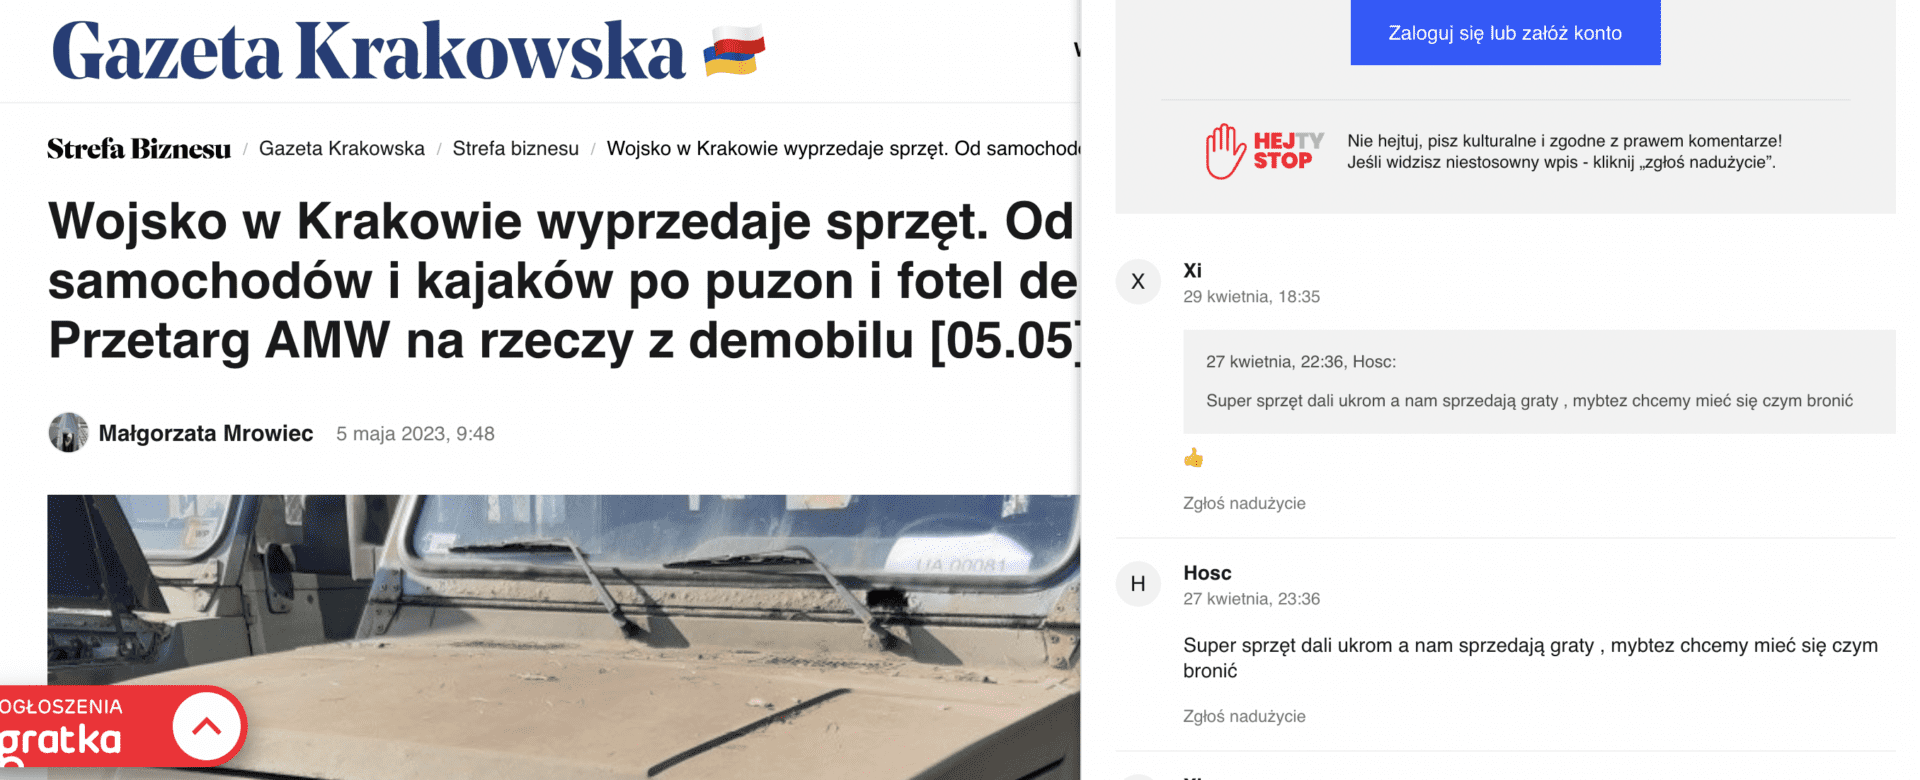 Antyukraiński komentarz opublikowany w serwisie Gazetakrakowska.pl